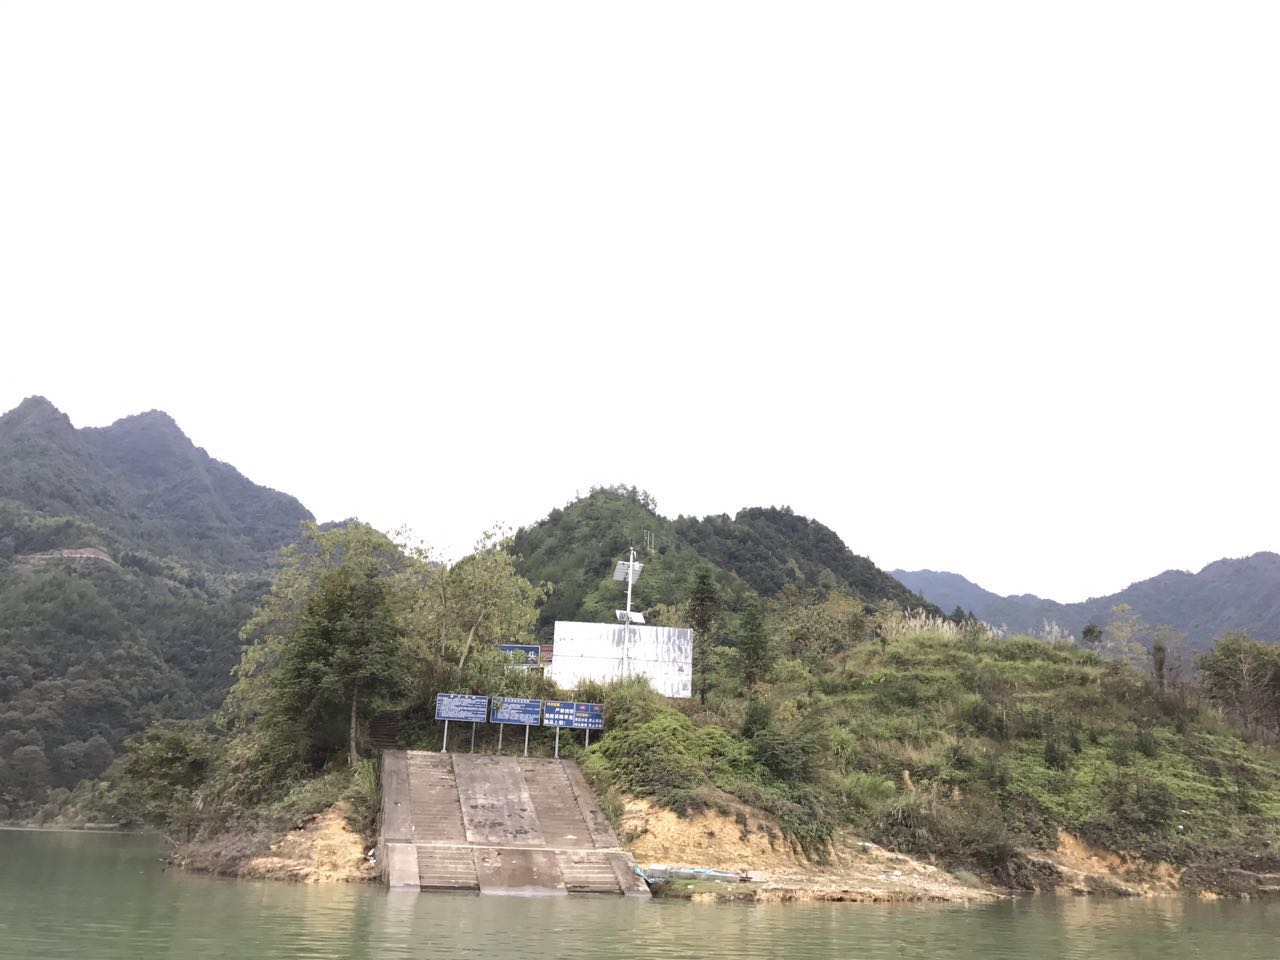 劉伯溫出入家鄉的千峽湖生態旅遊度假區石柱渡口